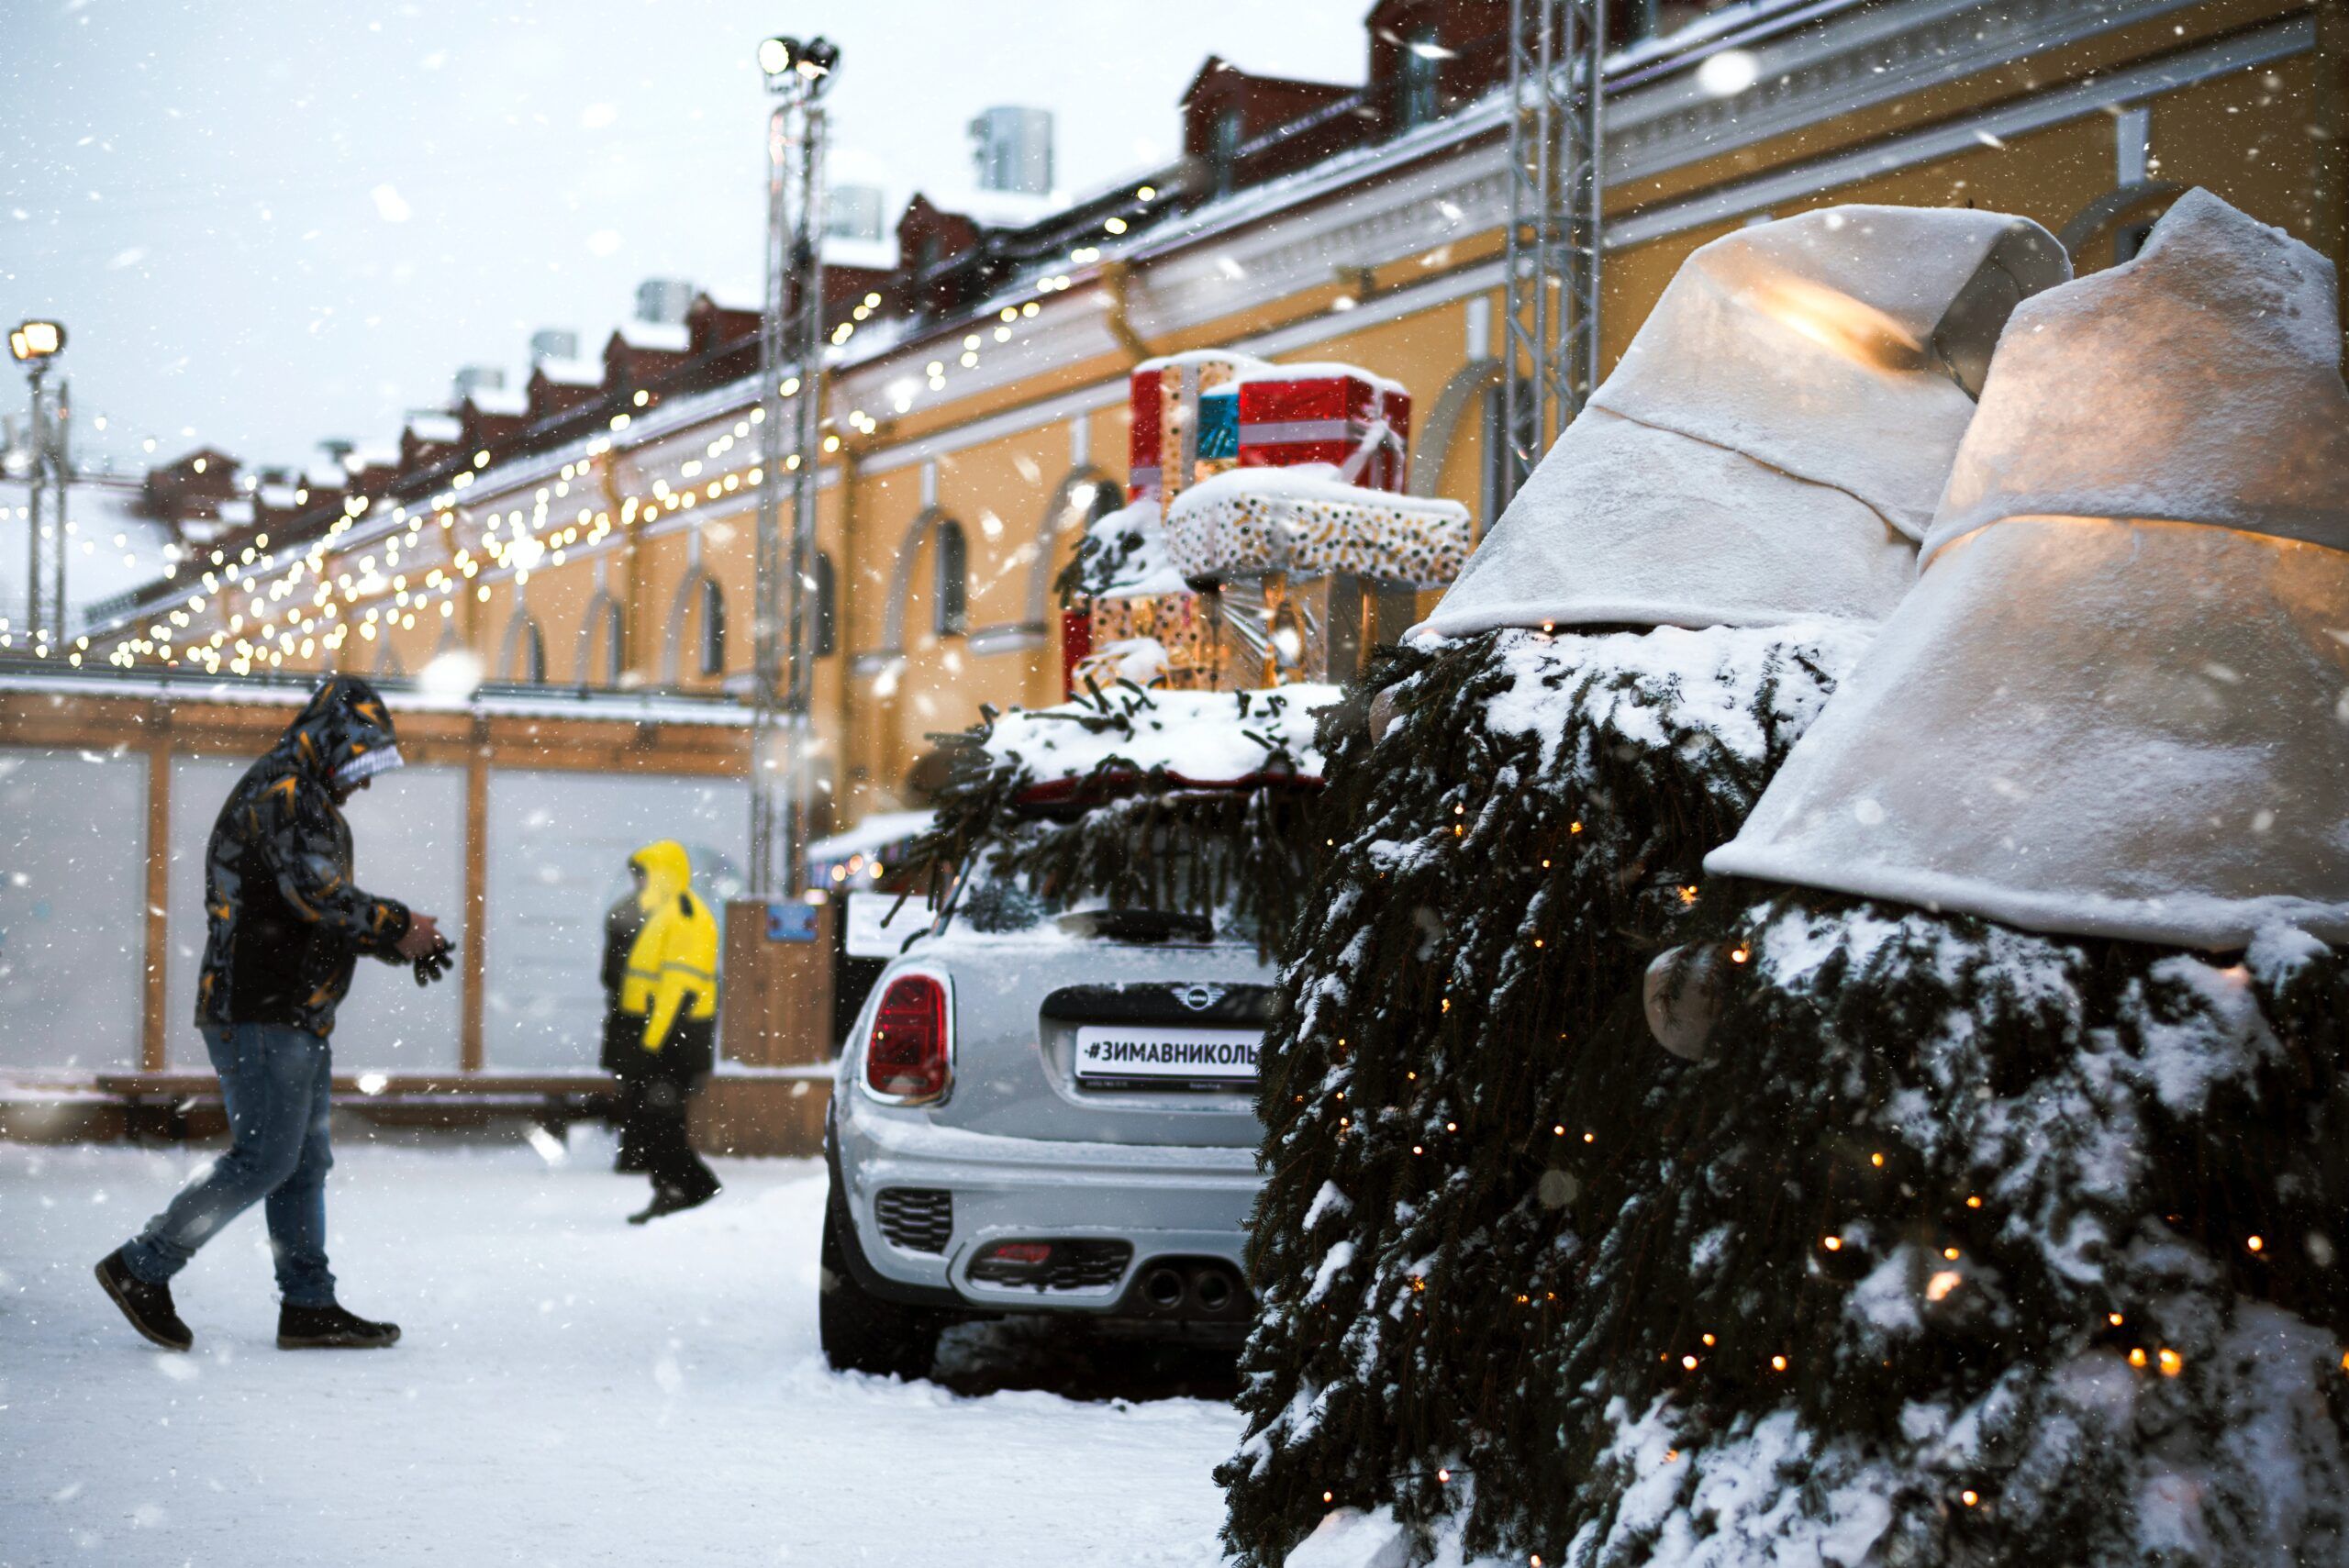 Петербург стал самым популярным маршрутом на Новый год и каникулы